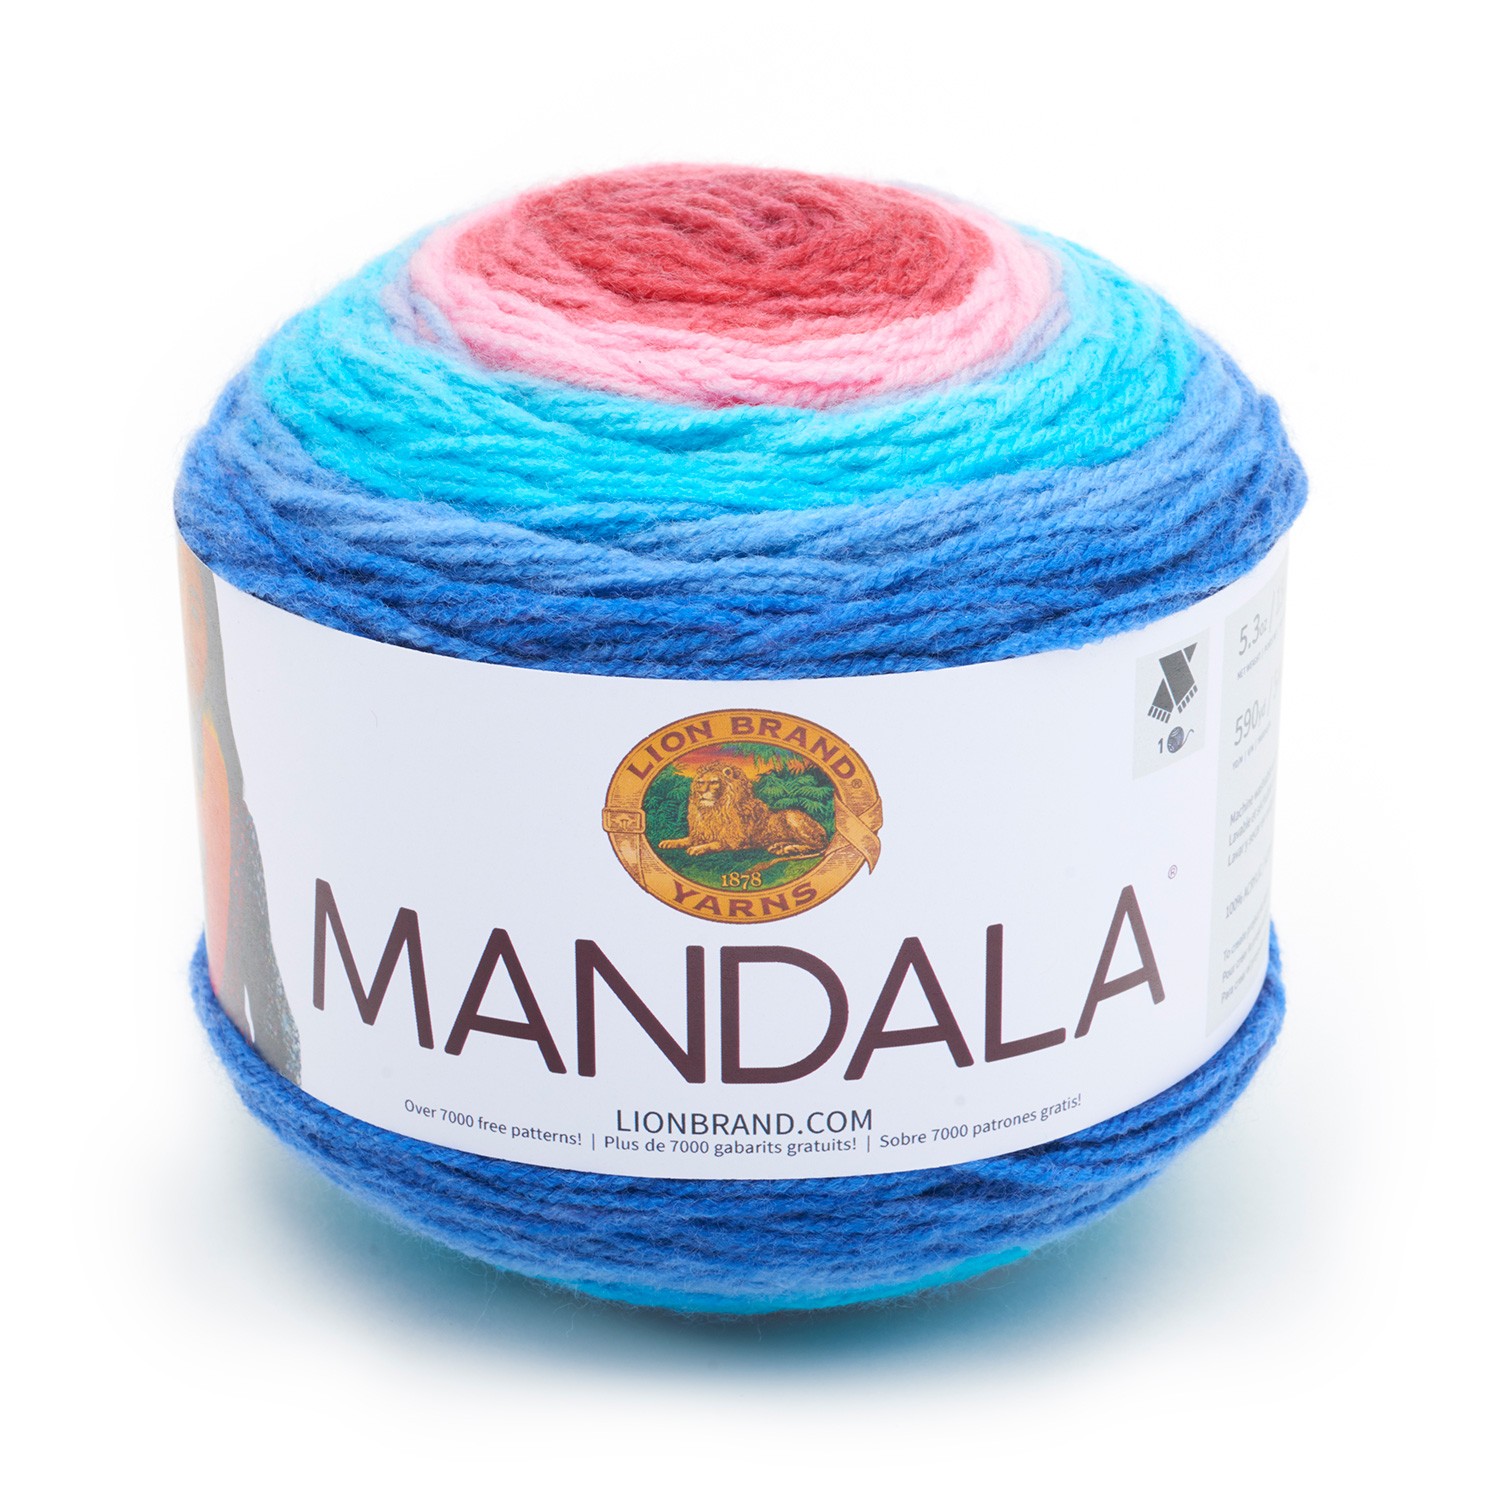 Mandala in color Phoenix